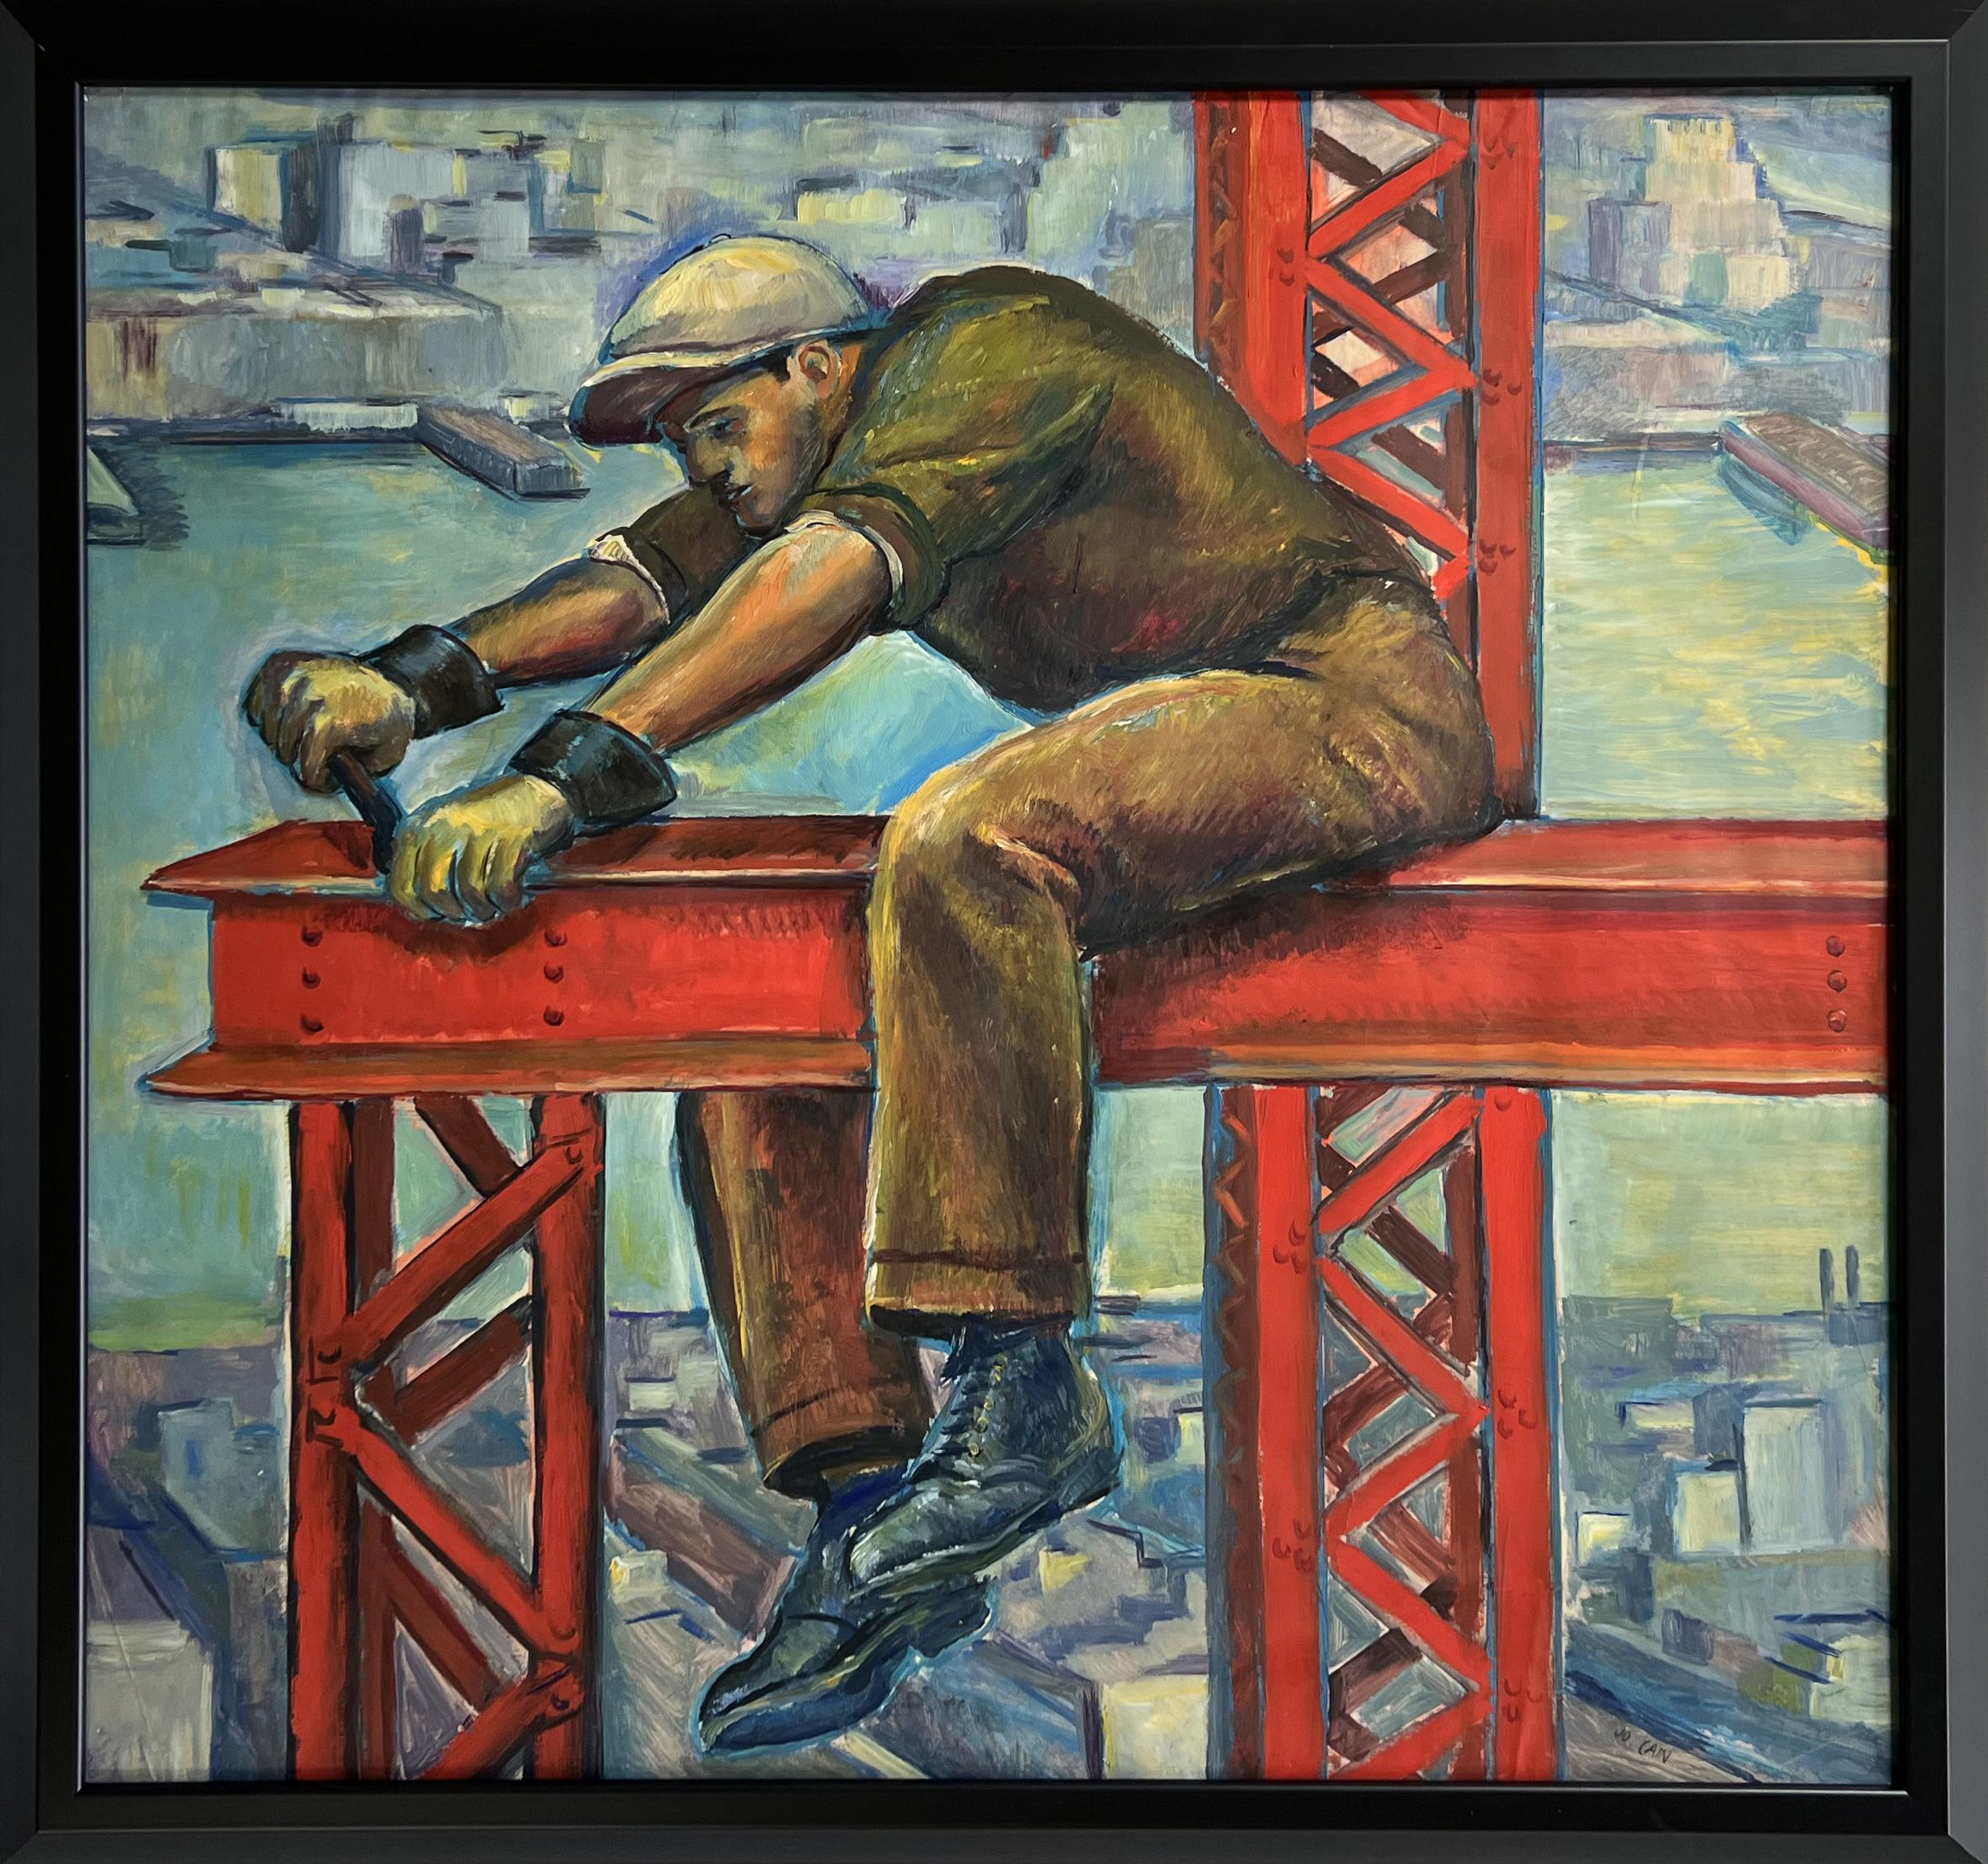 Worker American Scene 20th Century Modern Social Realism WPA Industrial Mural - Art by Jo Cain